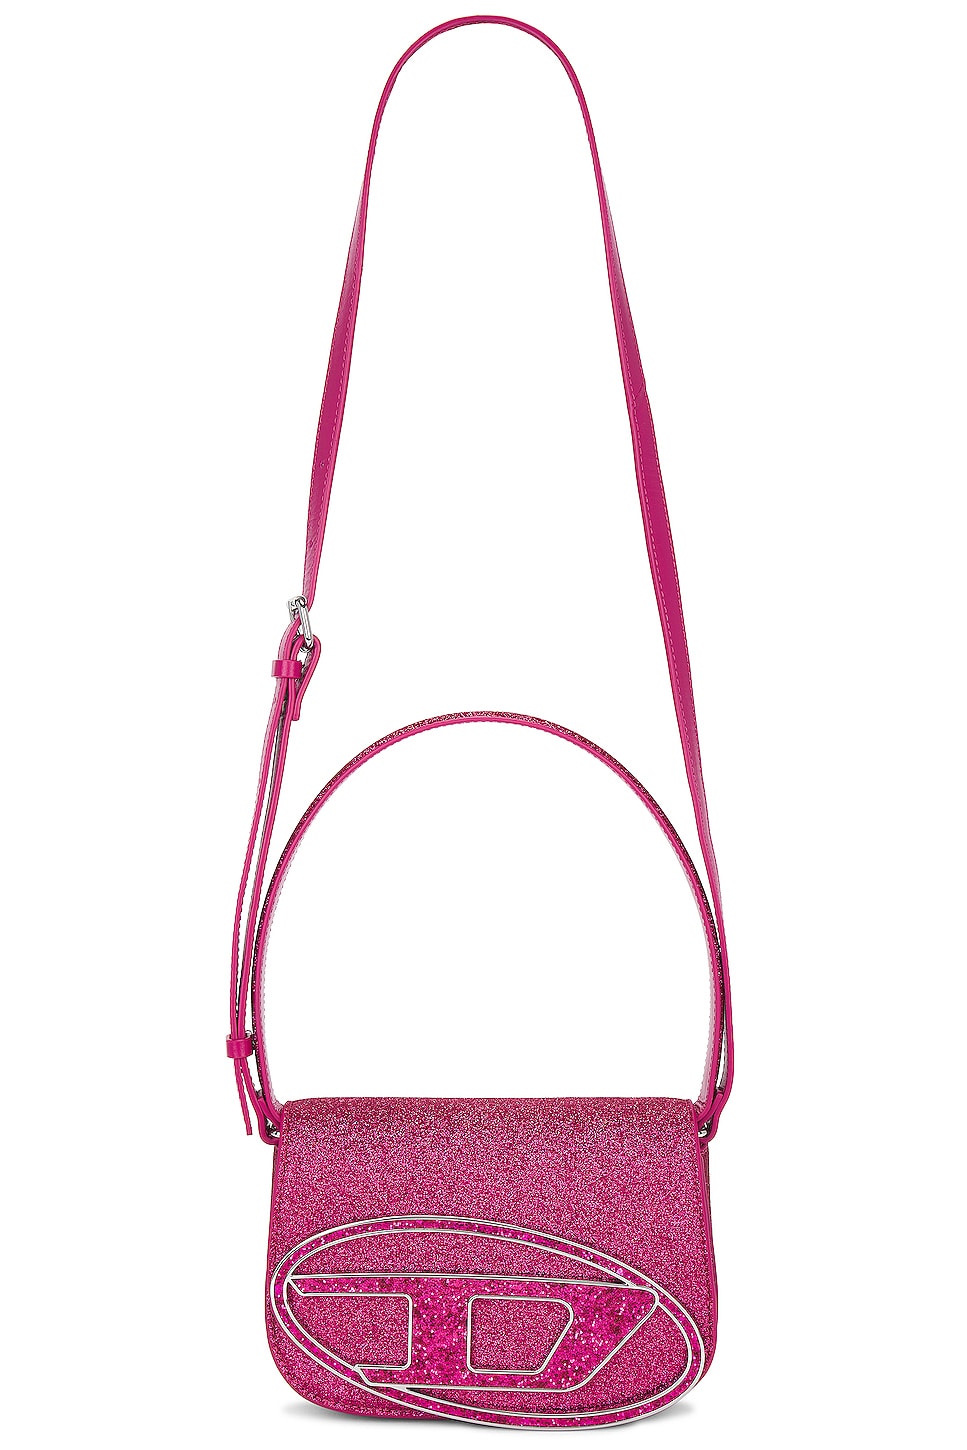 Loop Handbag in Pink